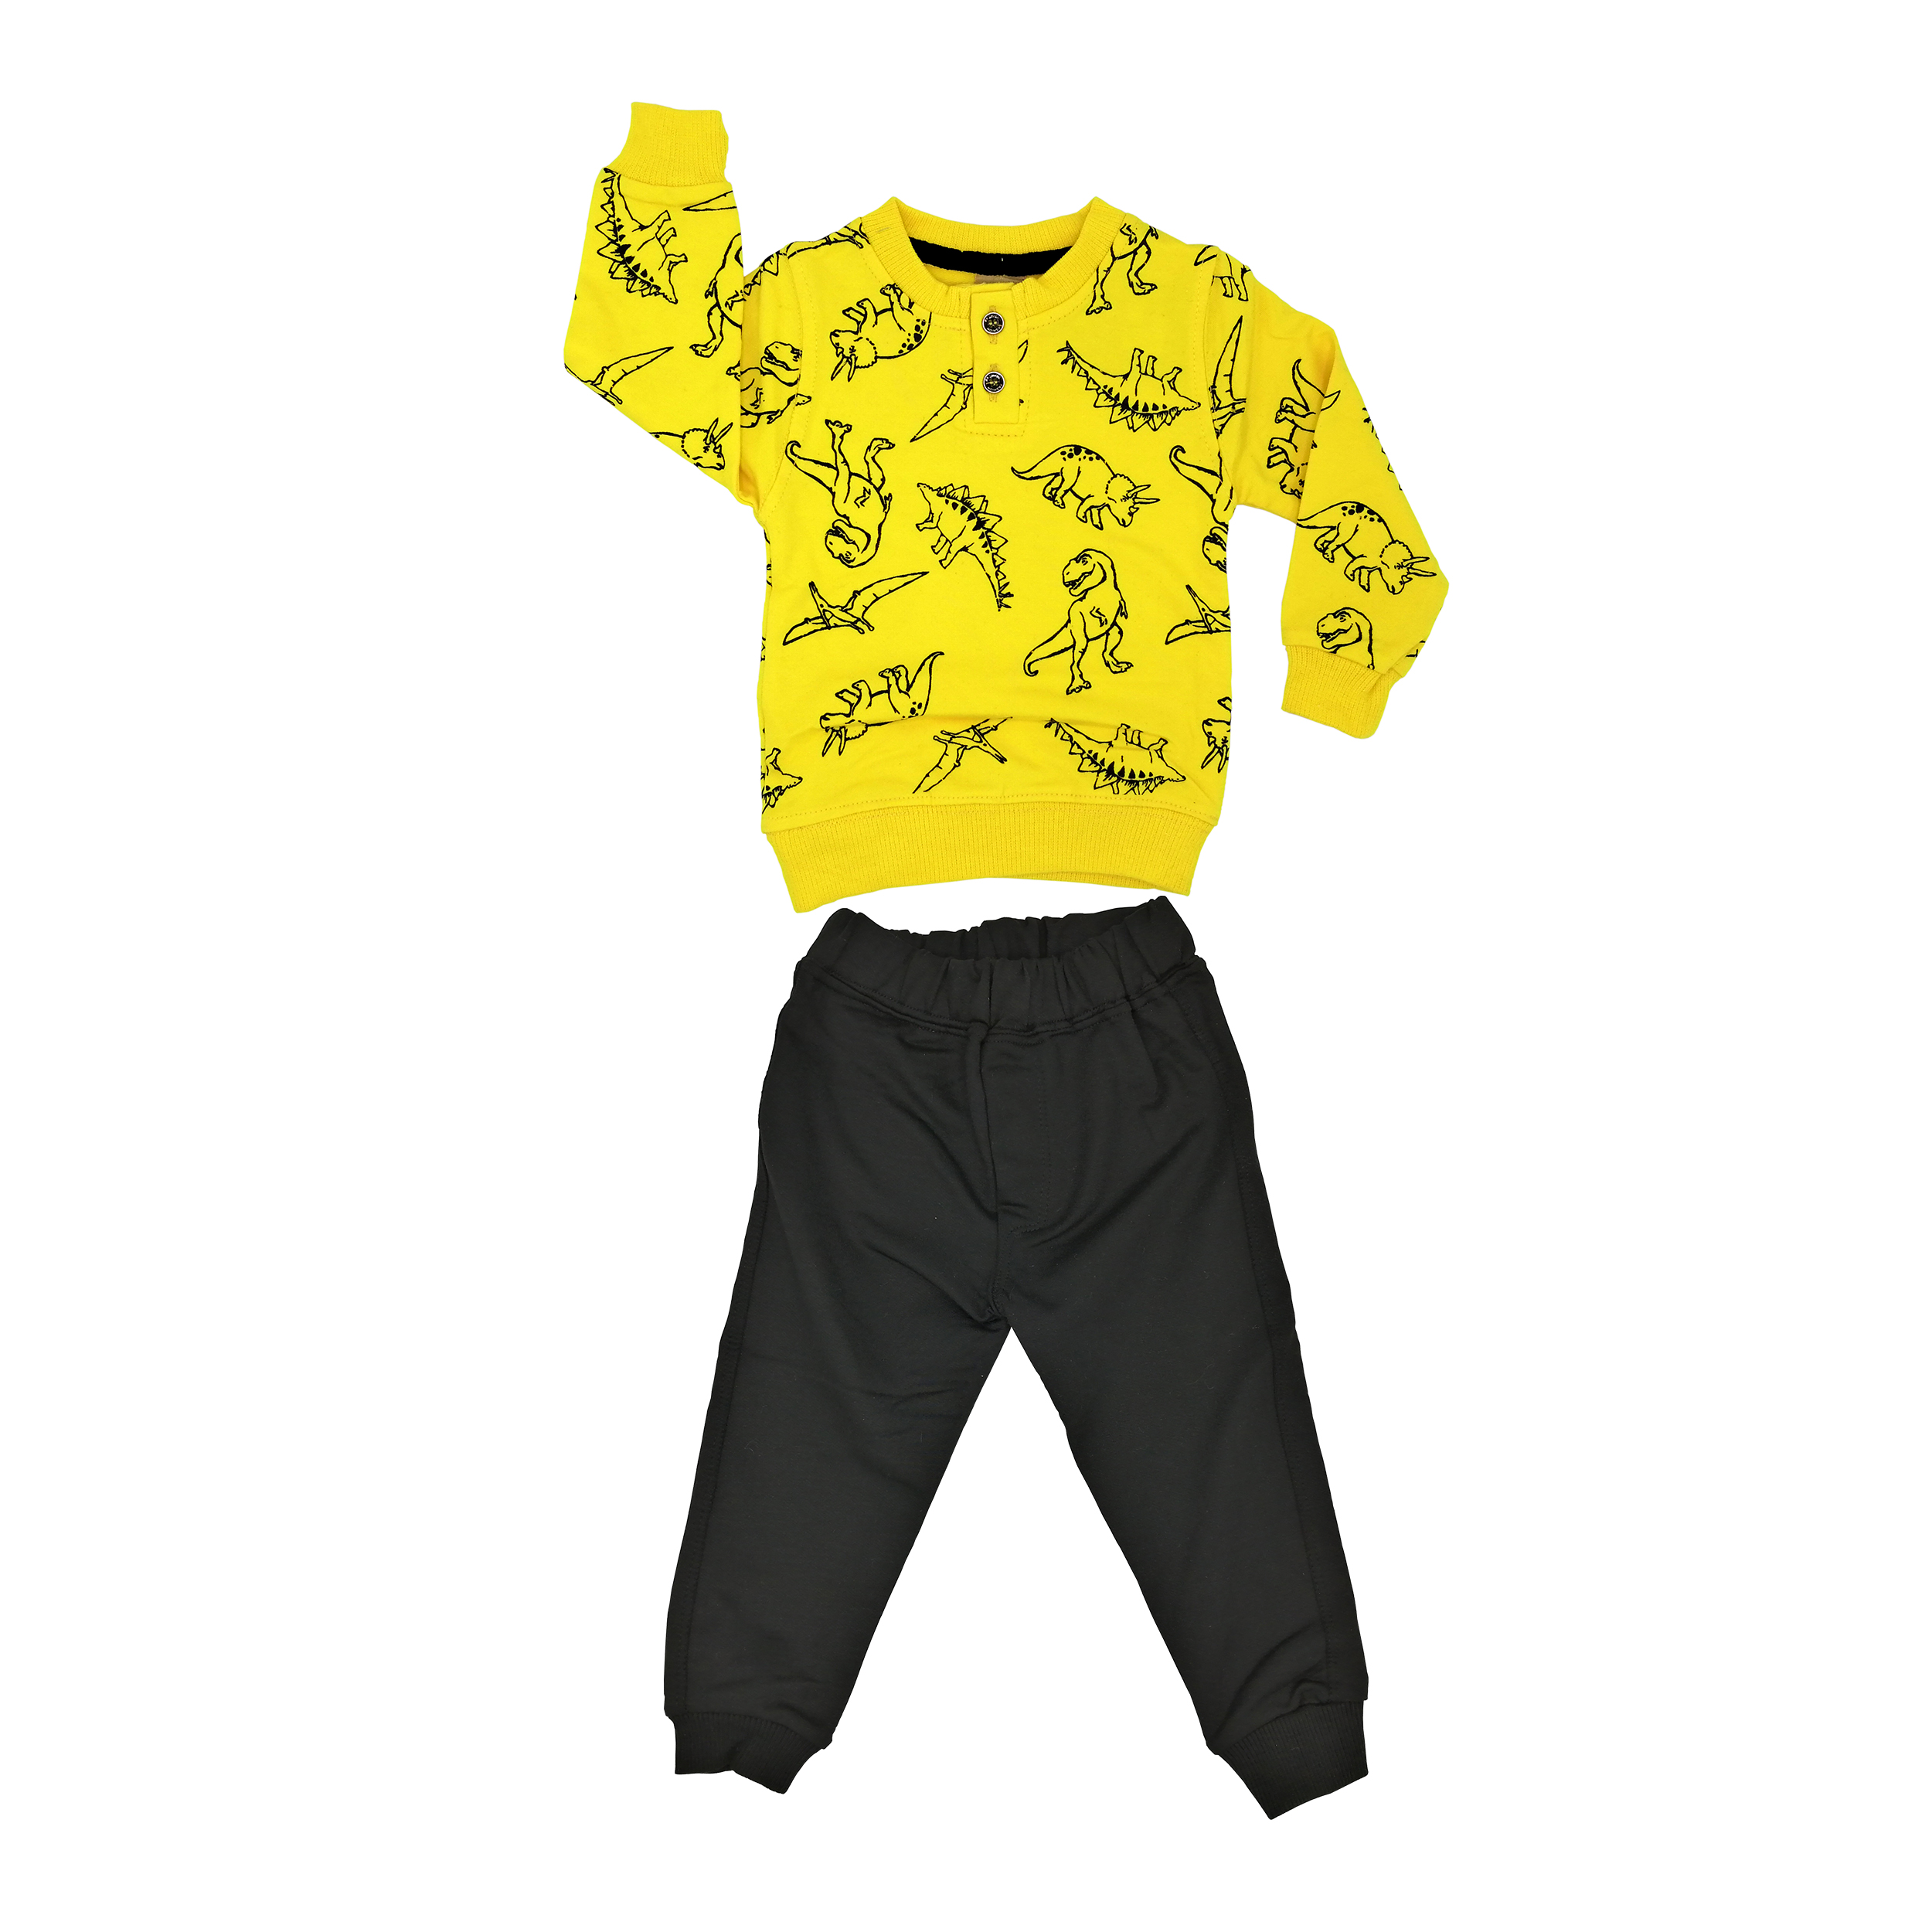 ست تی شرت و شلوار پسرانه مدل دایناسور کد Y1 رنگ زرد